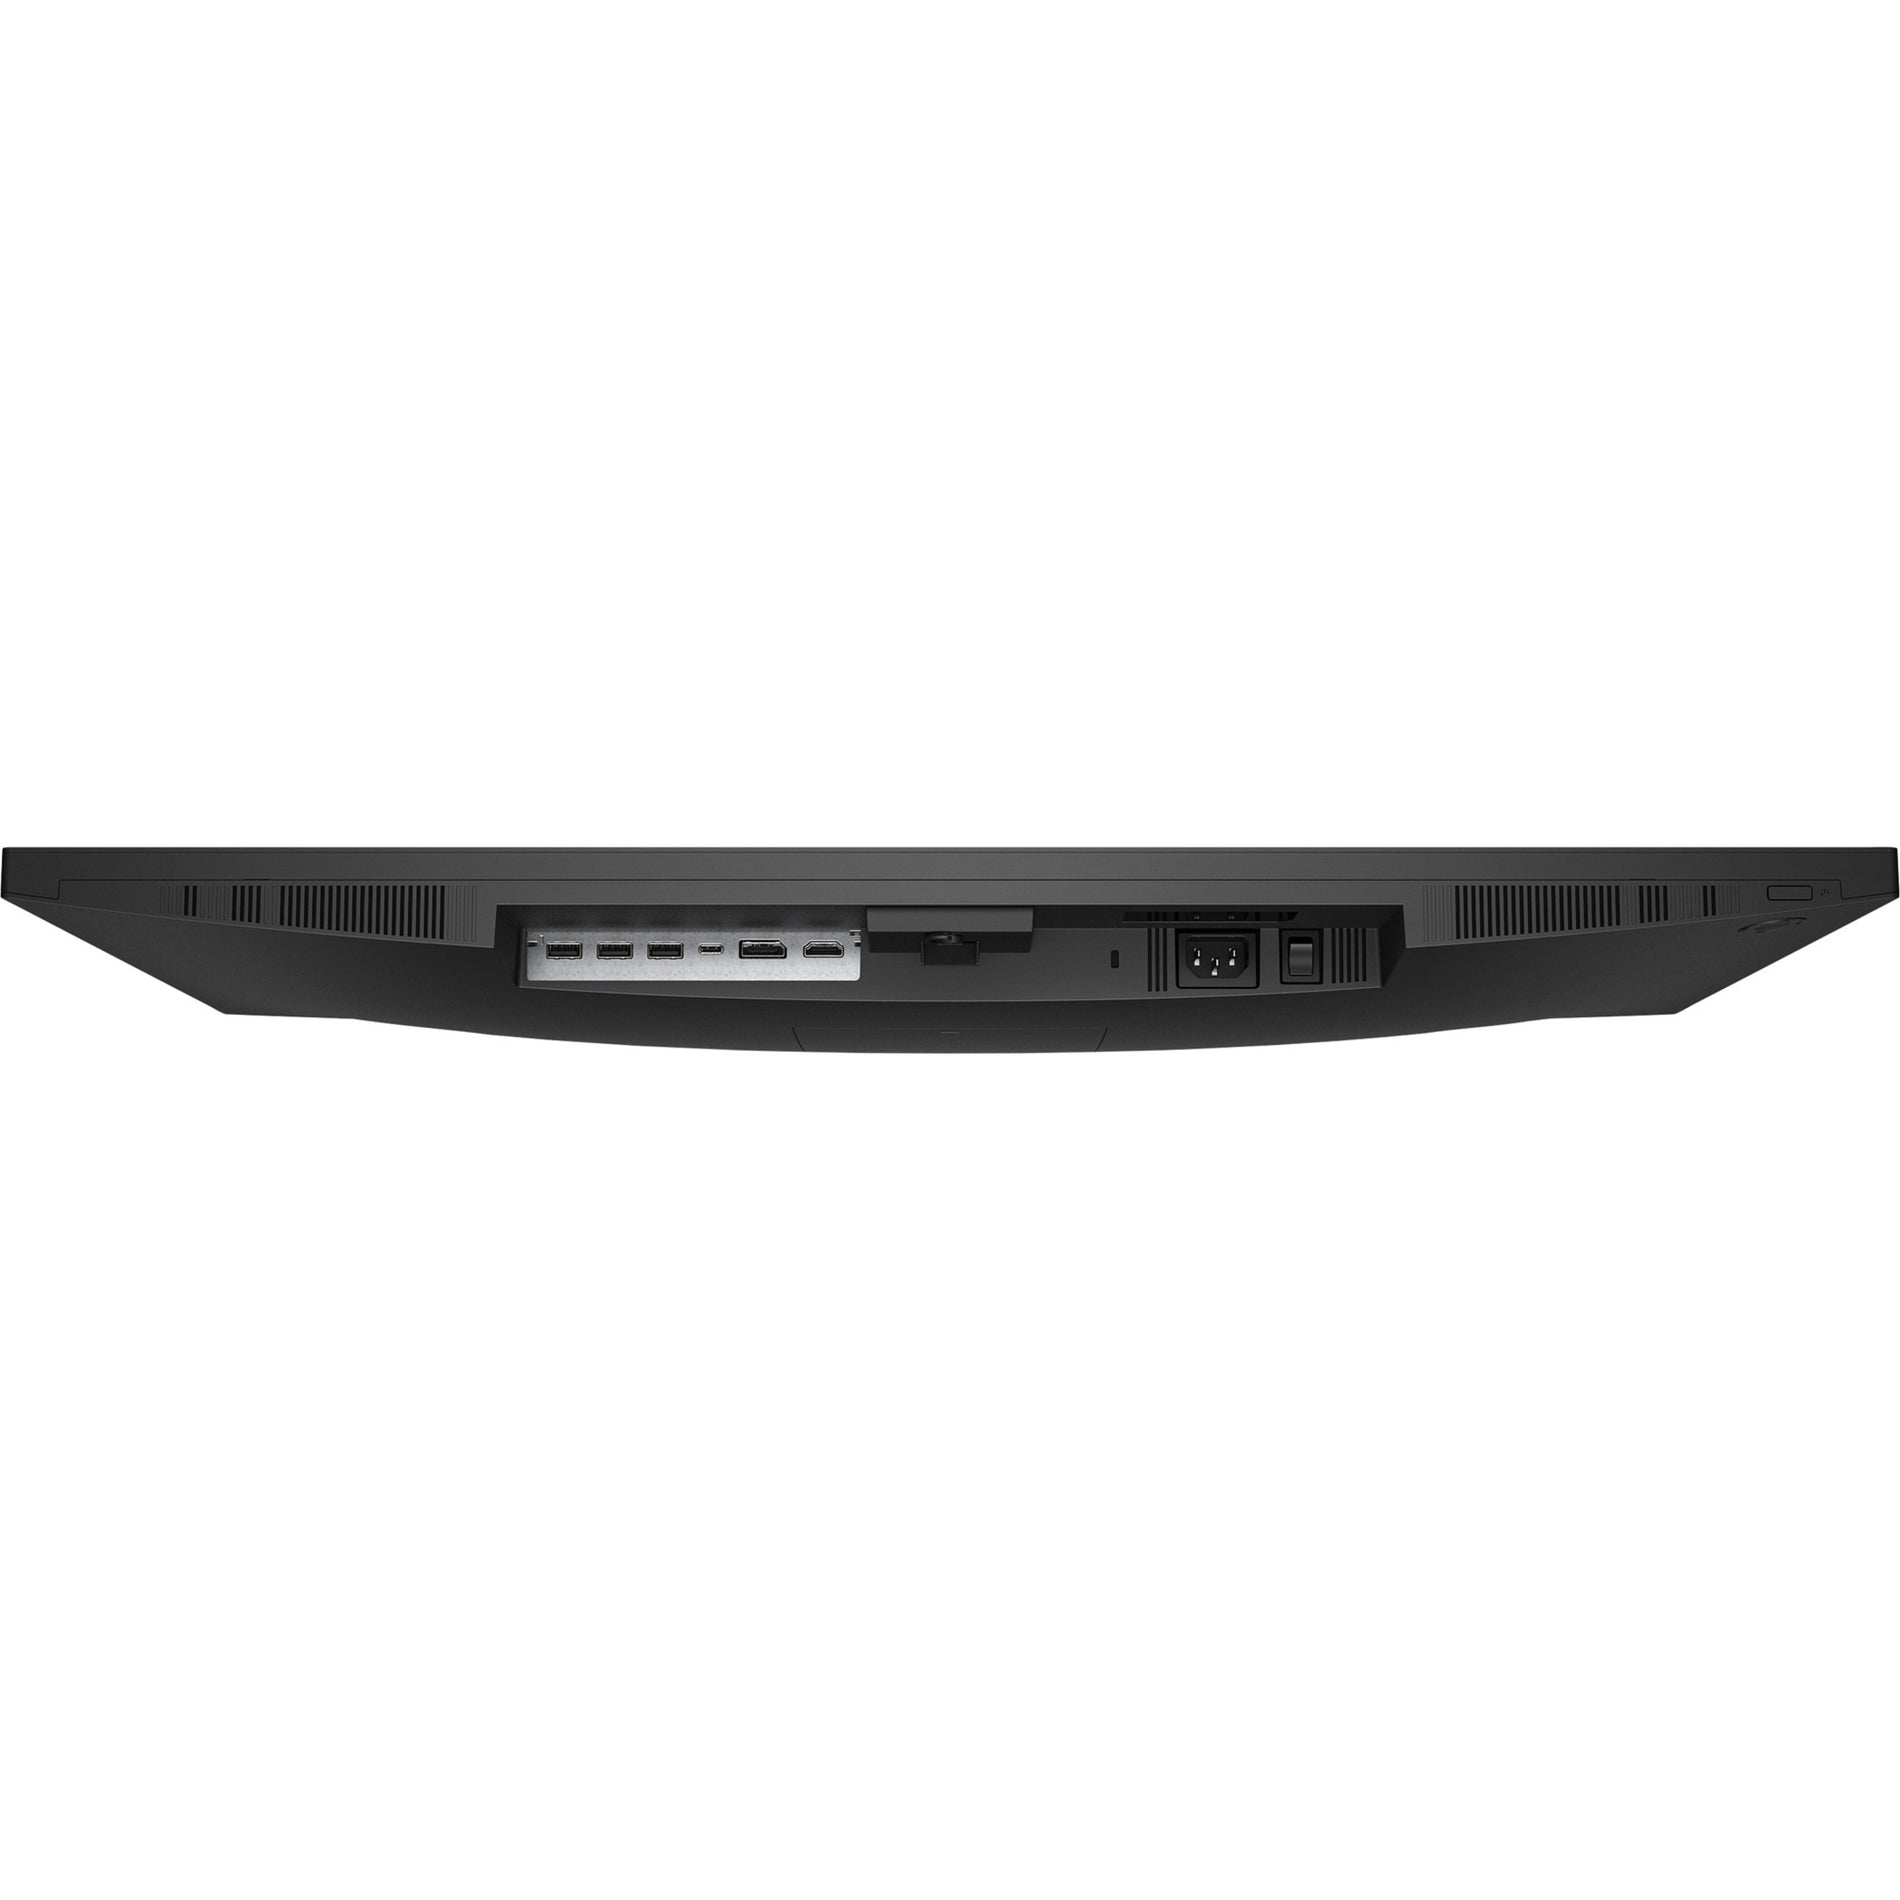 HP P32u G5 31.5" WQHD USB-C Monitor, 99% sRGB, 350 Nit, 3 Year Warranty